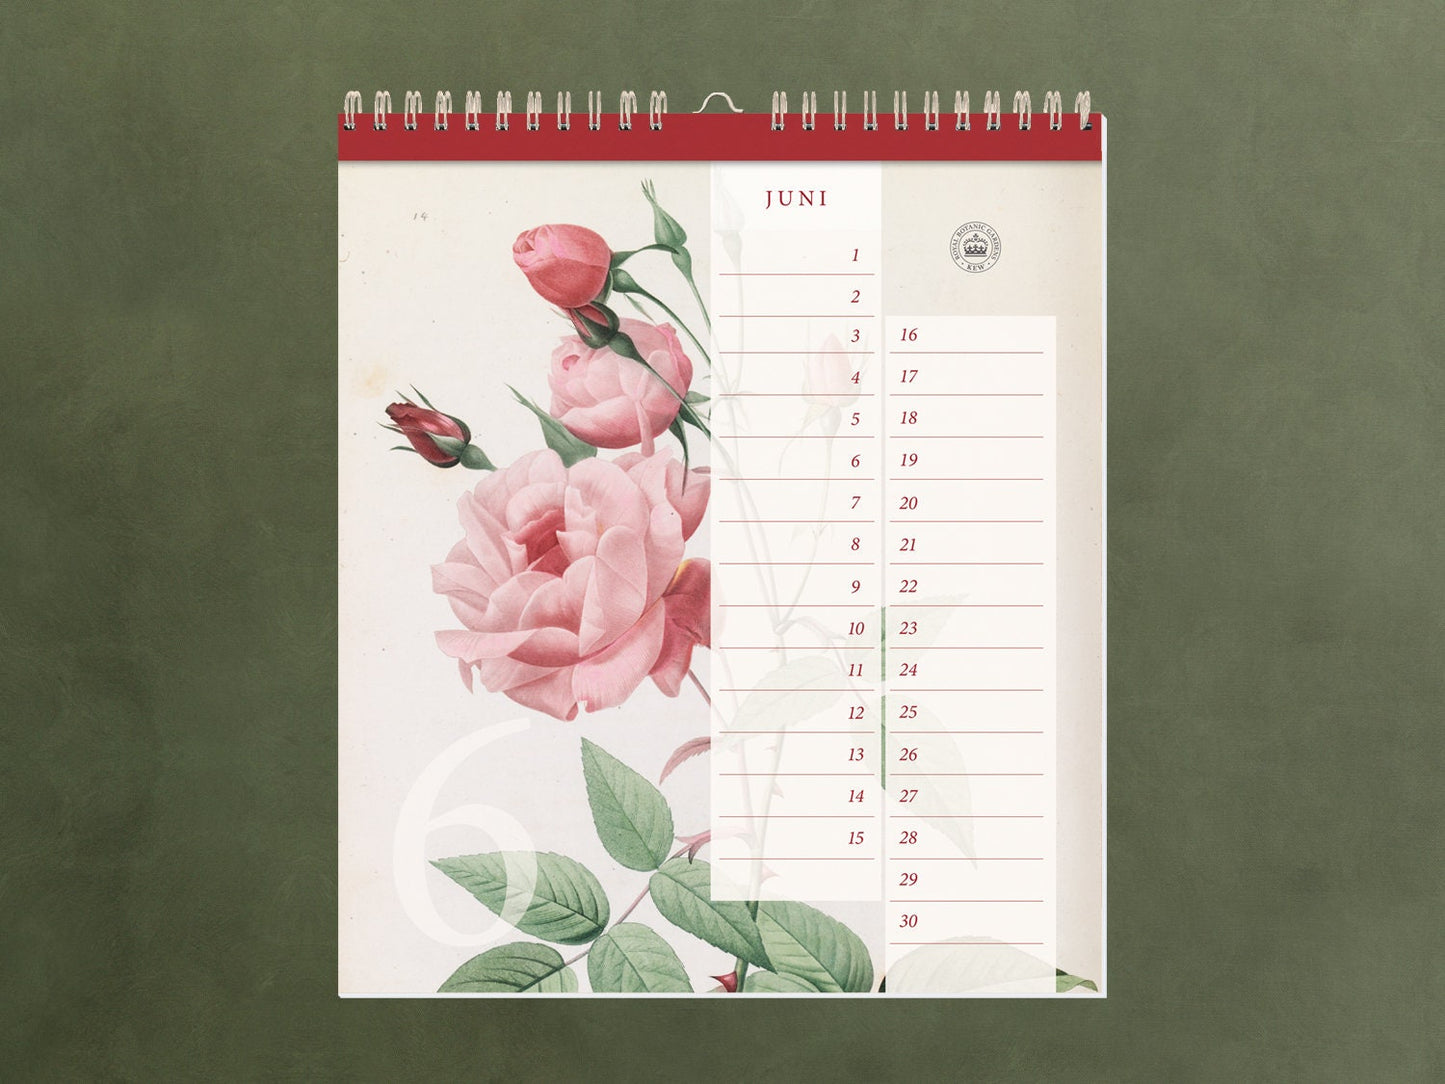 edler Geburtstagskalender ›Kew Gardens‹, immerwährender Kalender, Geburtstage, Natur, Illustrationen, Pflanzen, Garten, Organizer, Geschenk